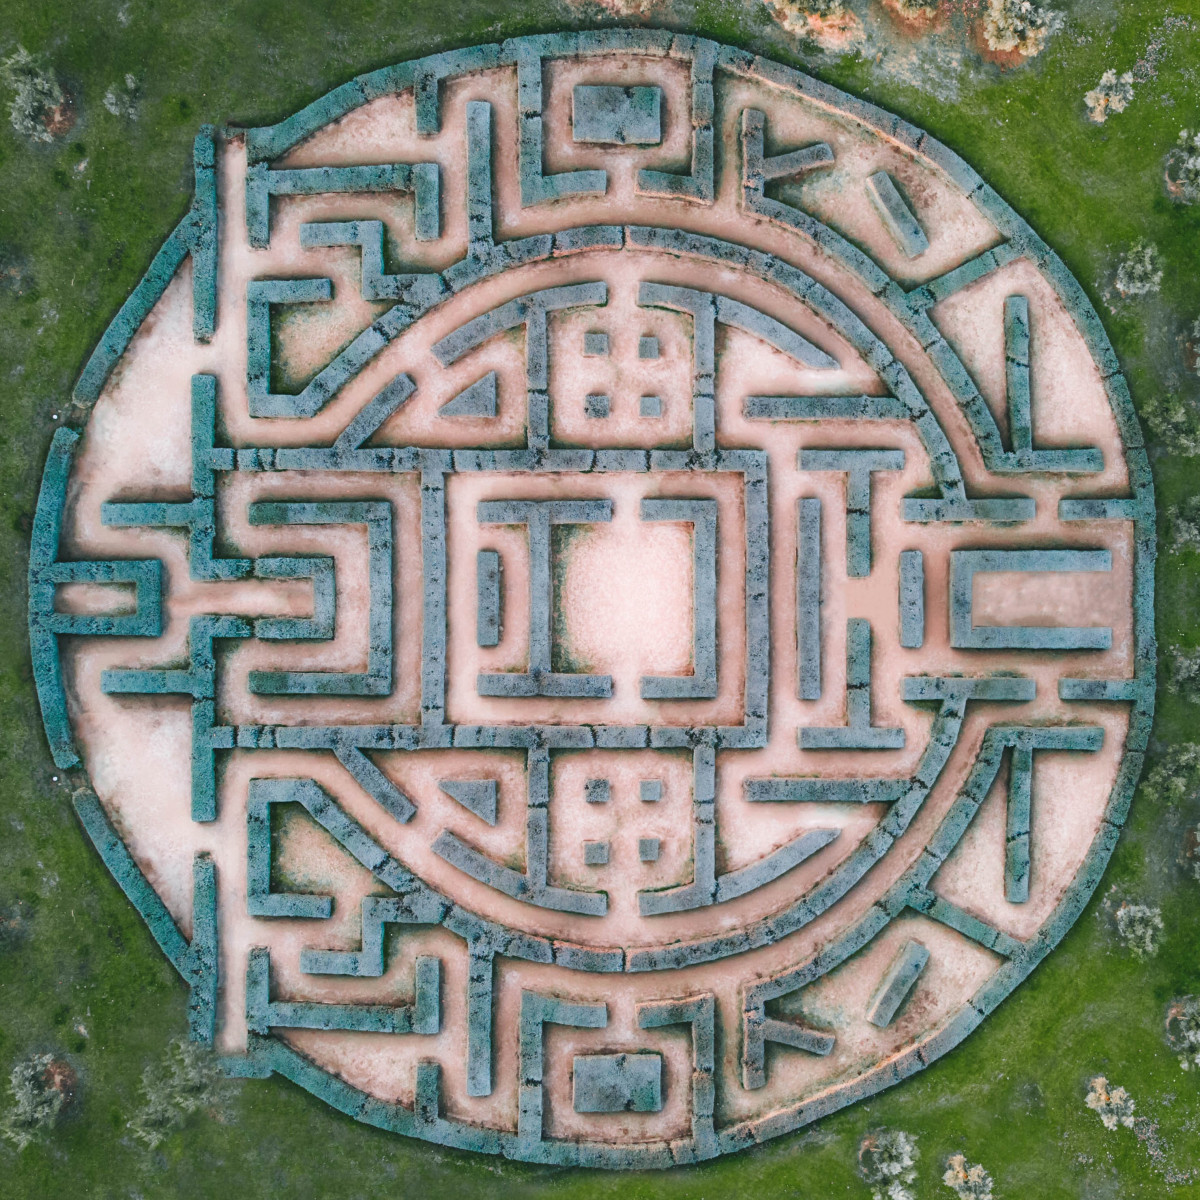 Aerial view of a garden maze